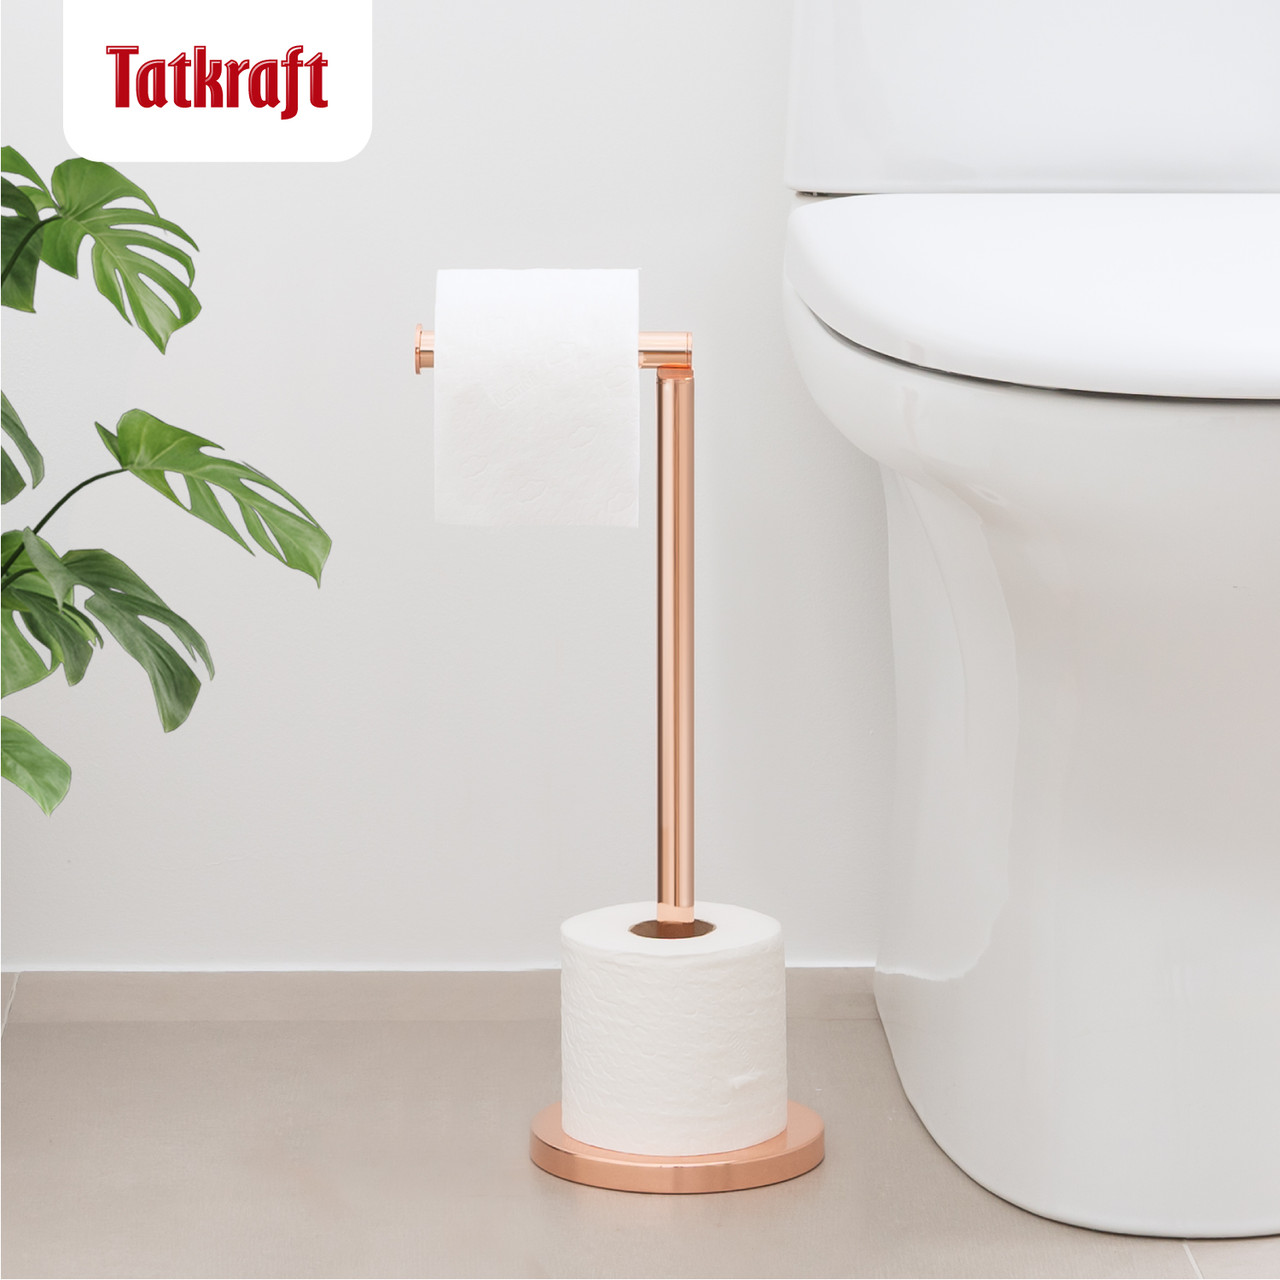 Tatkraft Tess Напольный держатель рулонов туалетной бумаги, розовое золото.